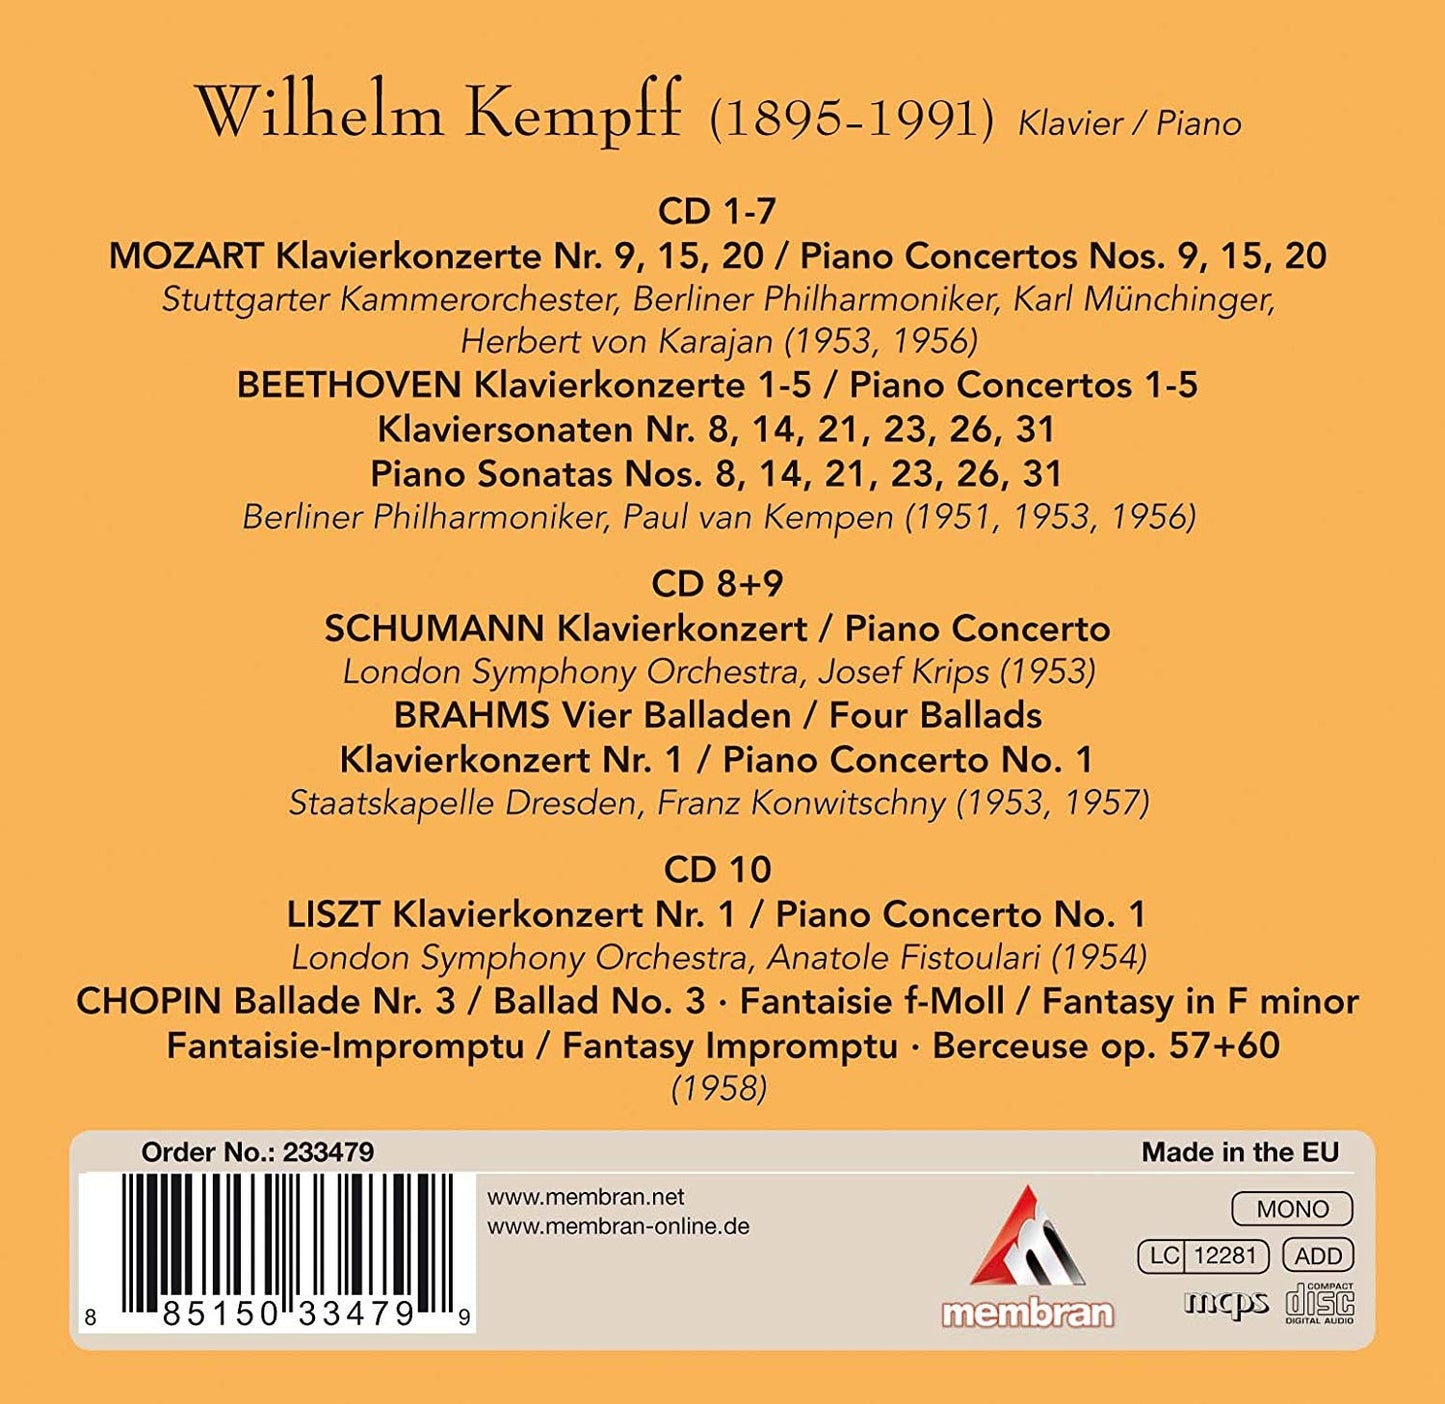 WILHELM KEMPFF - POET OF THE KEYBOARD (10 CDS)